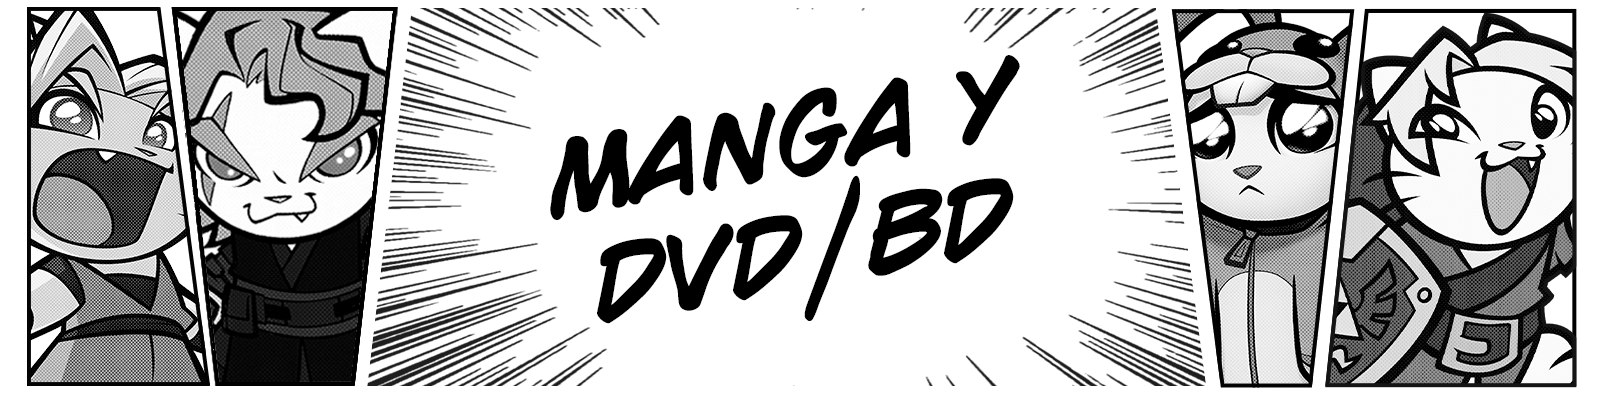 Manga & DVD/BD